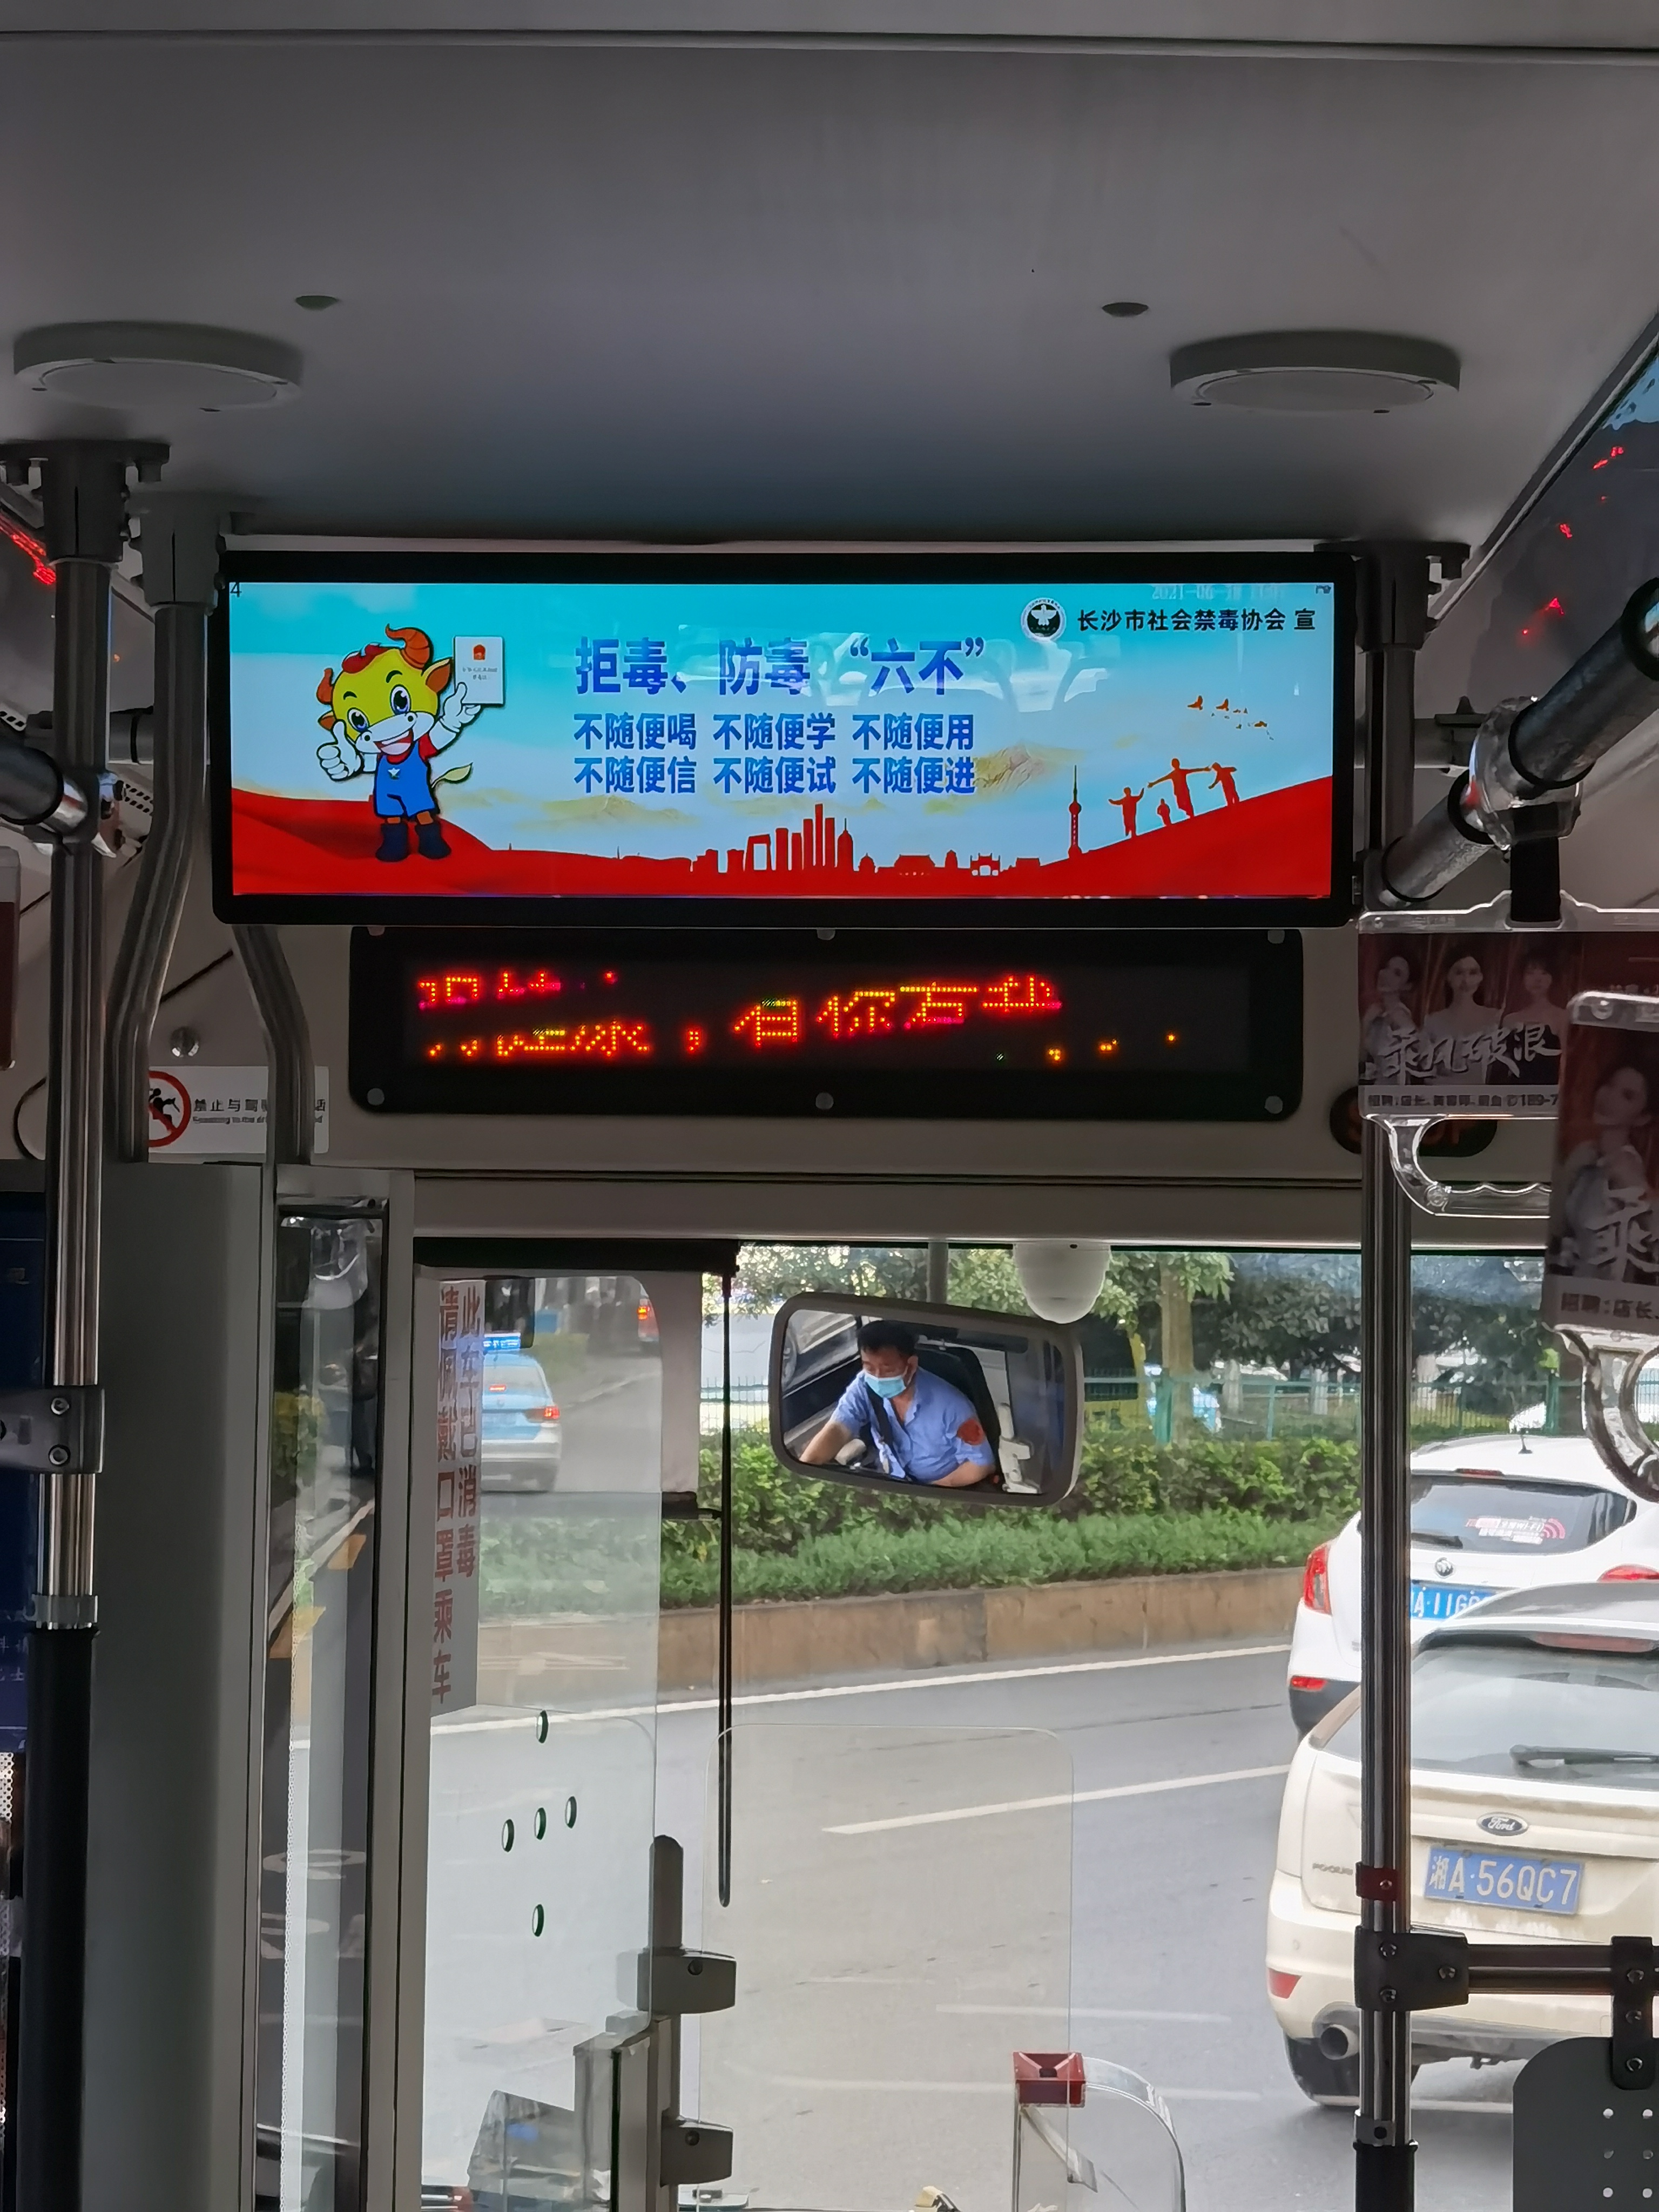 公交车的智慧电子屏幕上播放着关于“拒毒、防毒‘六不’”原则的视频。 长沙晚报通讯员 周肤敏 供图